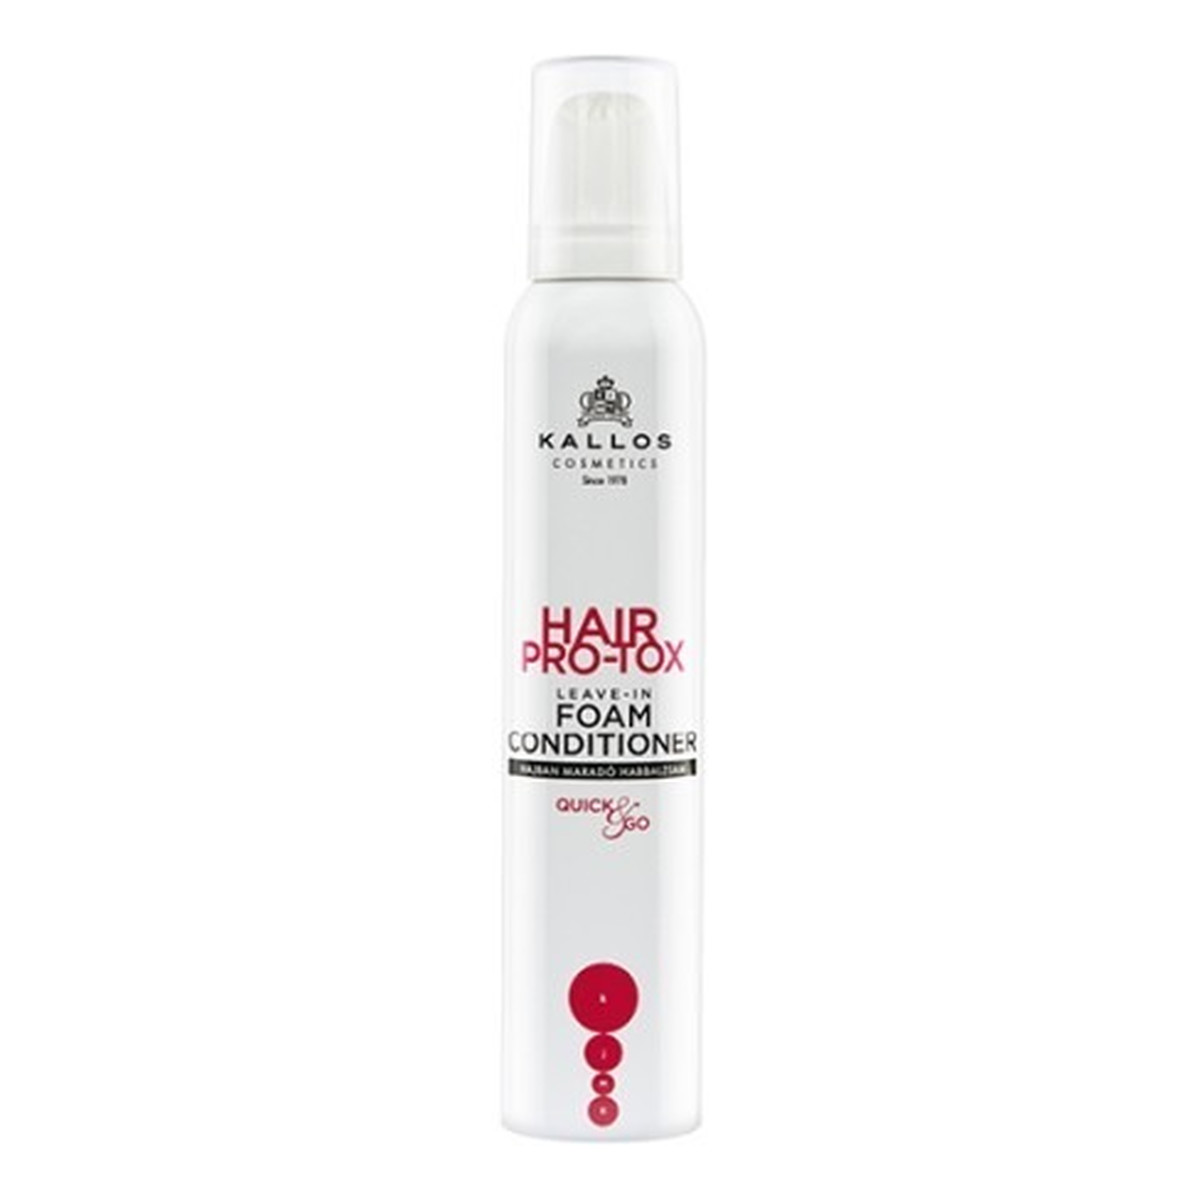 Kallos Hair Pro-Tox Leaven - In Foam Conditioner Pianka-Odżywka do włosów 200ml